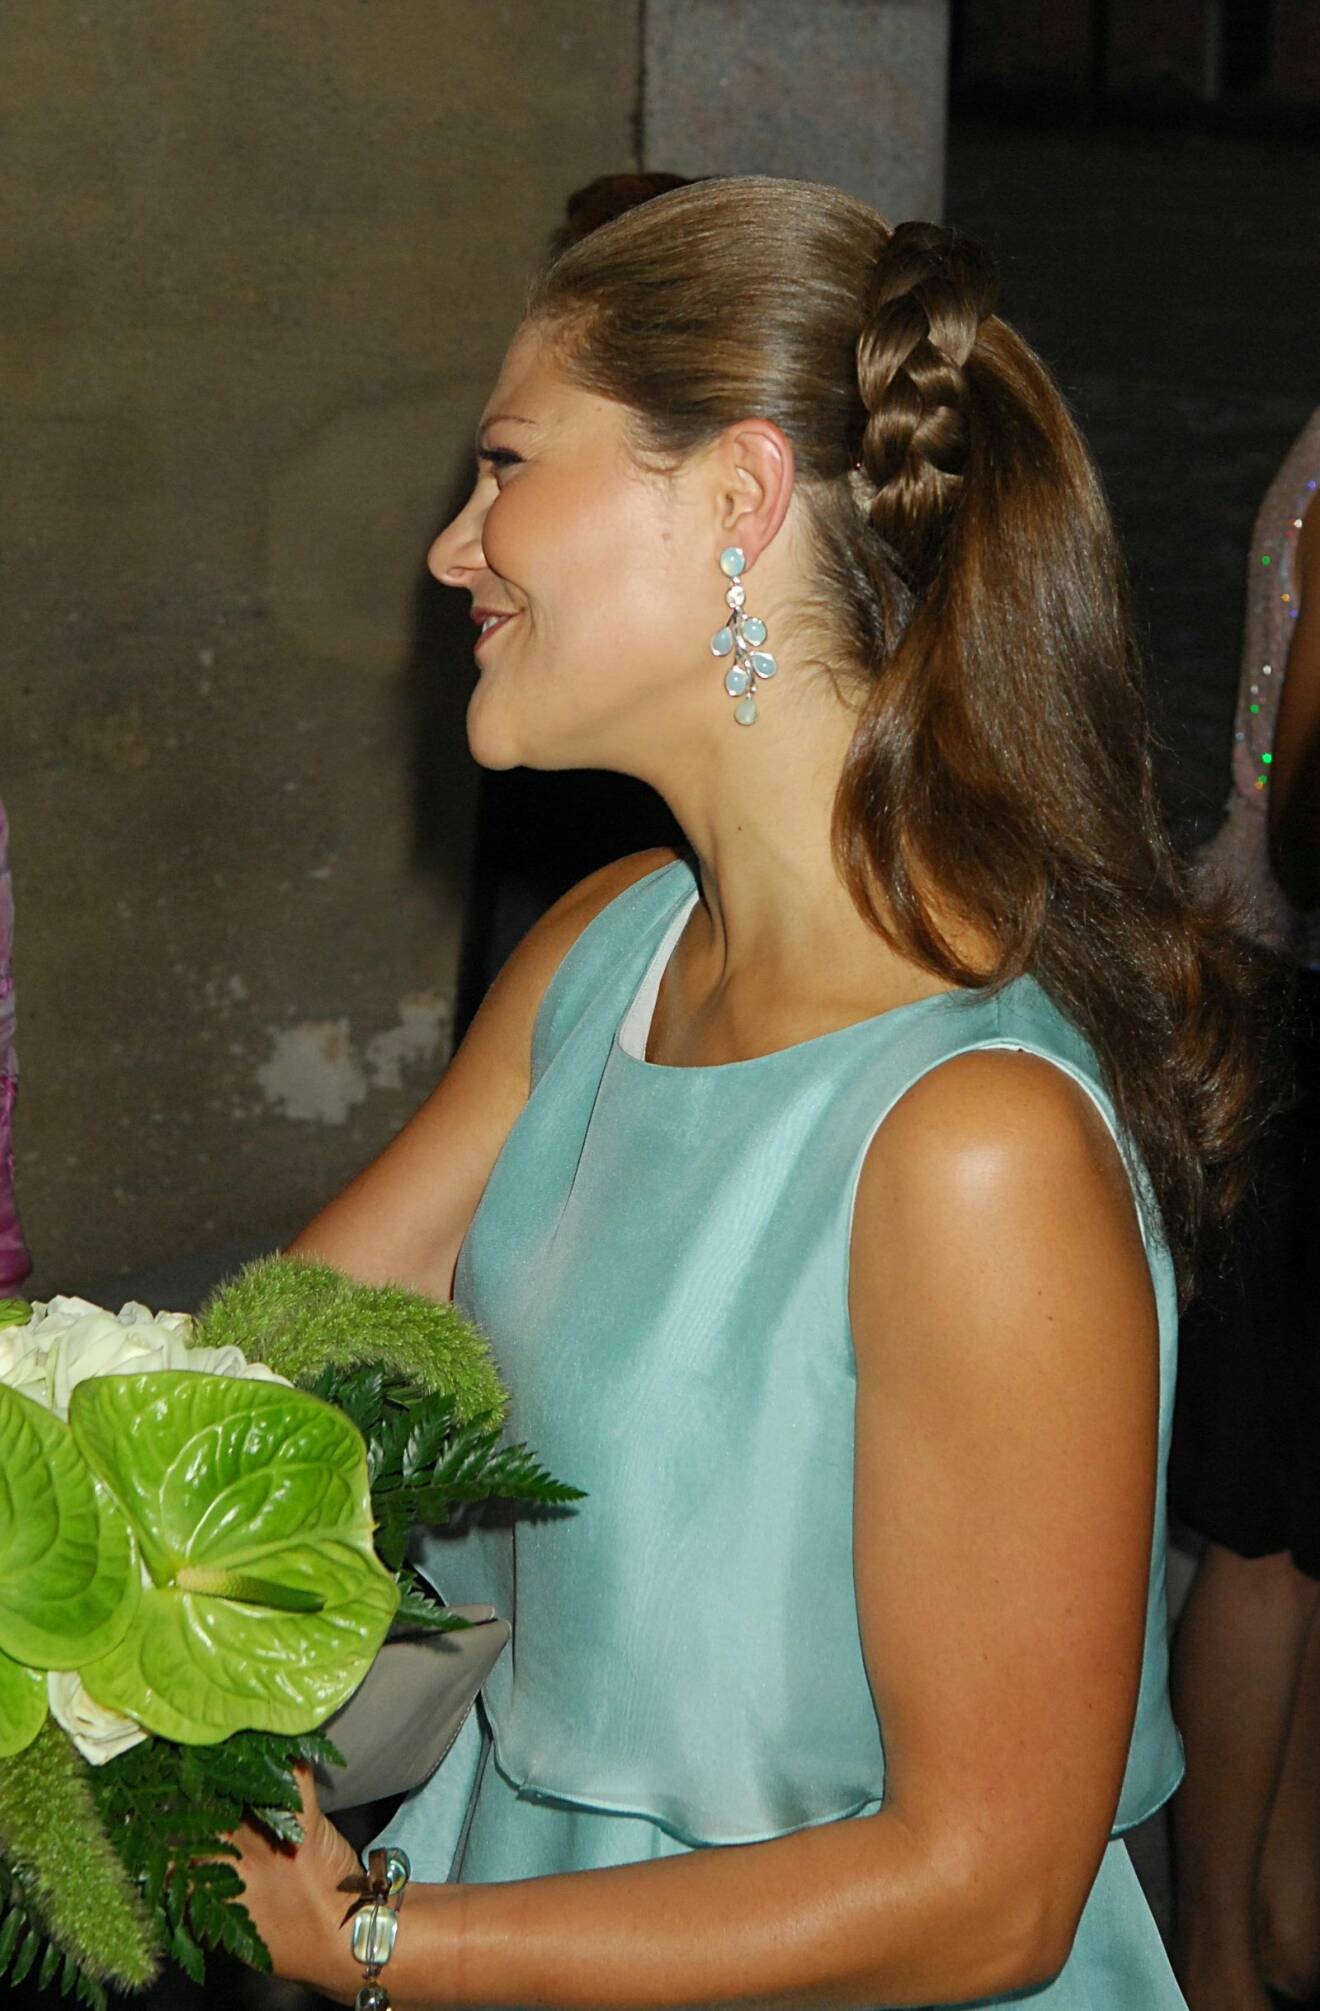 Kronprinsessan Victoria 2008 med en inbakad fläta i frisyren.